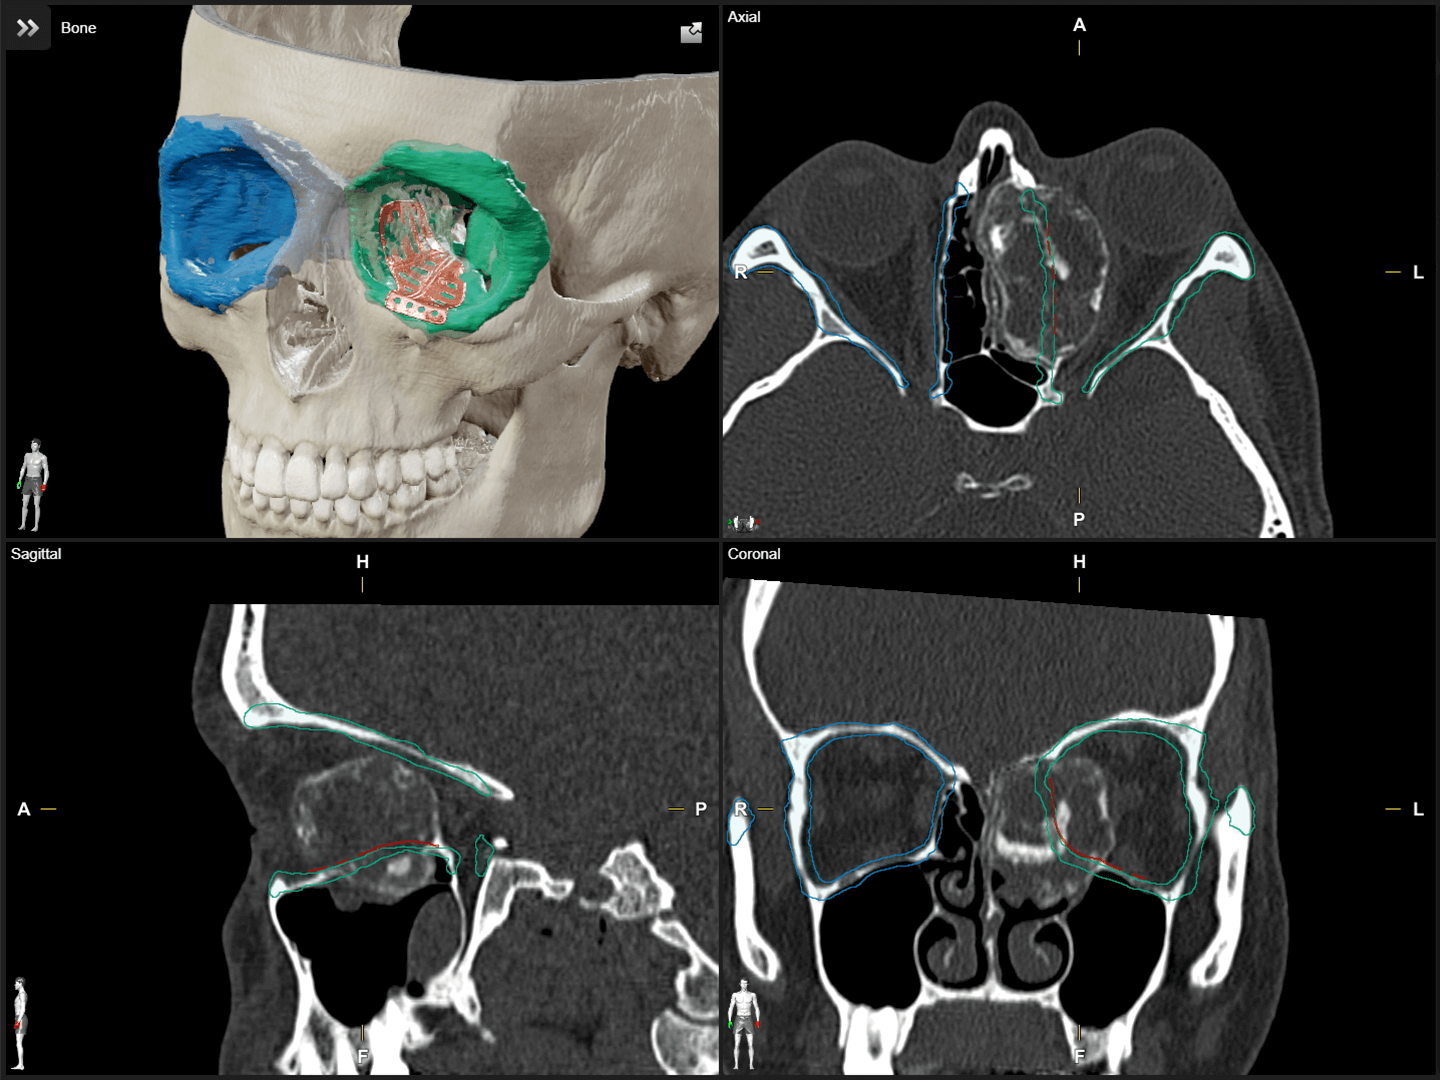 Quatre vues d’images acquises du crâne avec objets segmentés, utilisées pour la planification chirurgicale crânio-maxillo-faciale